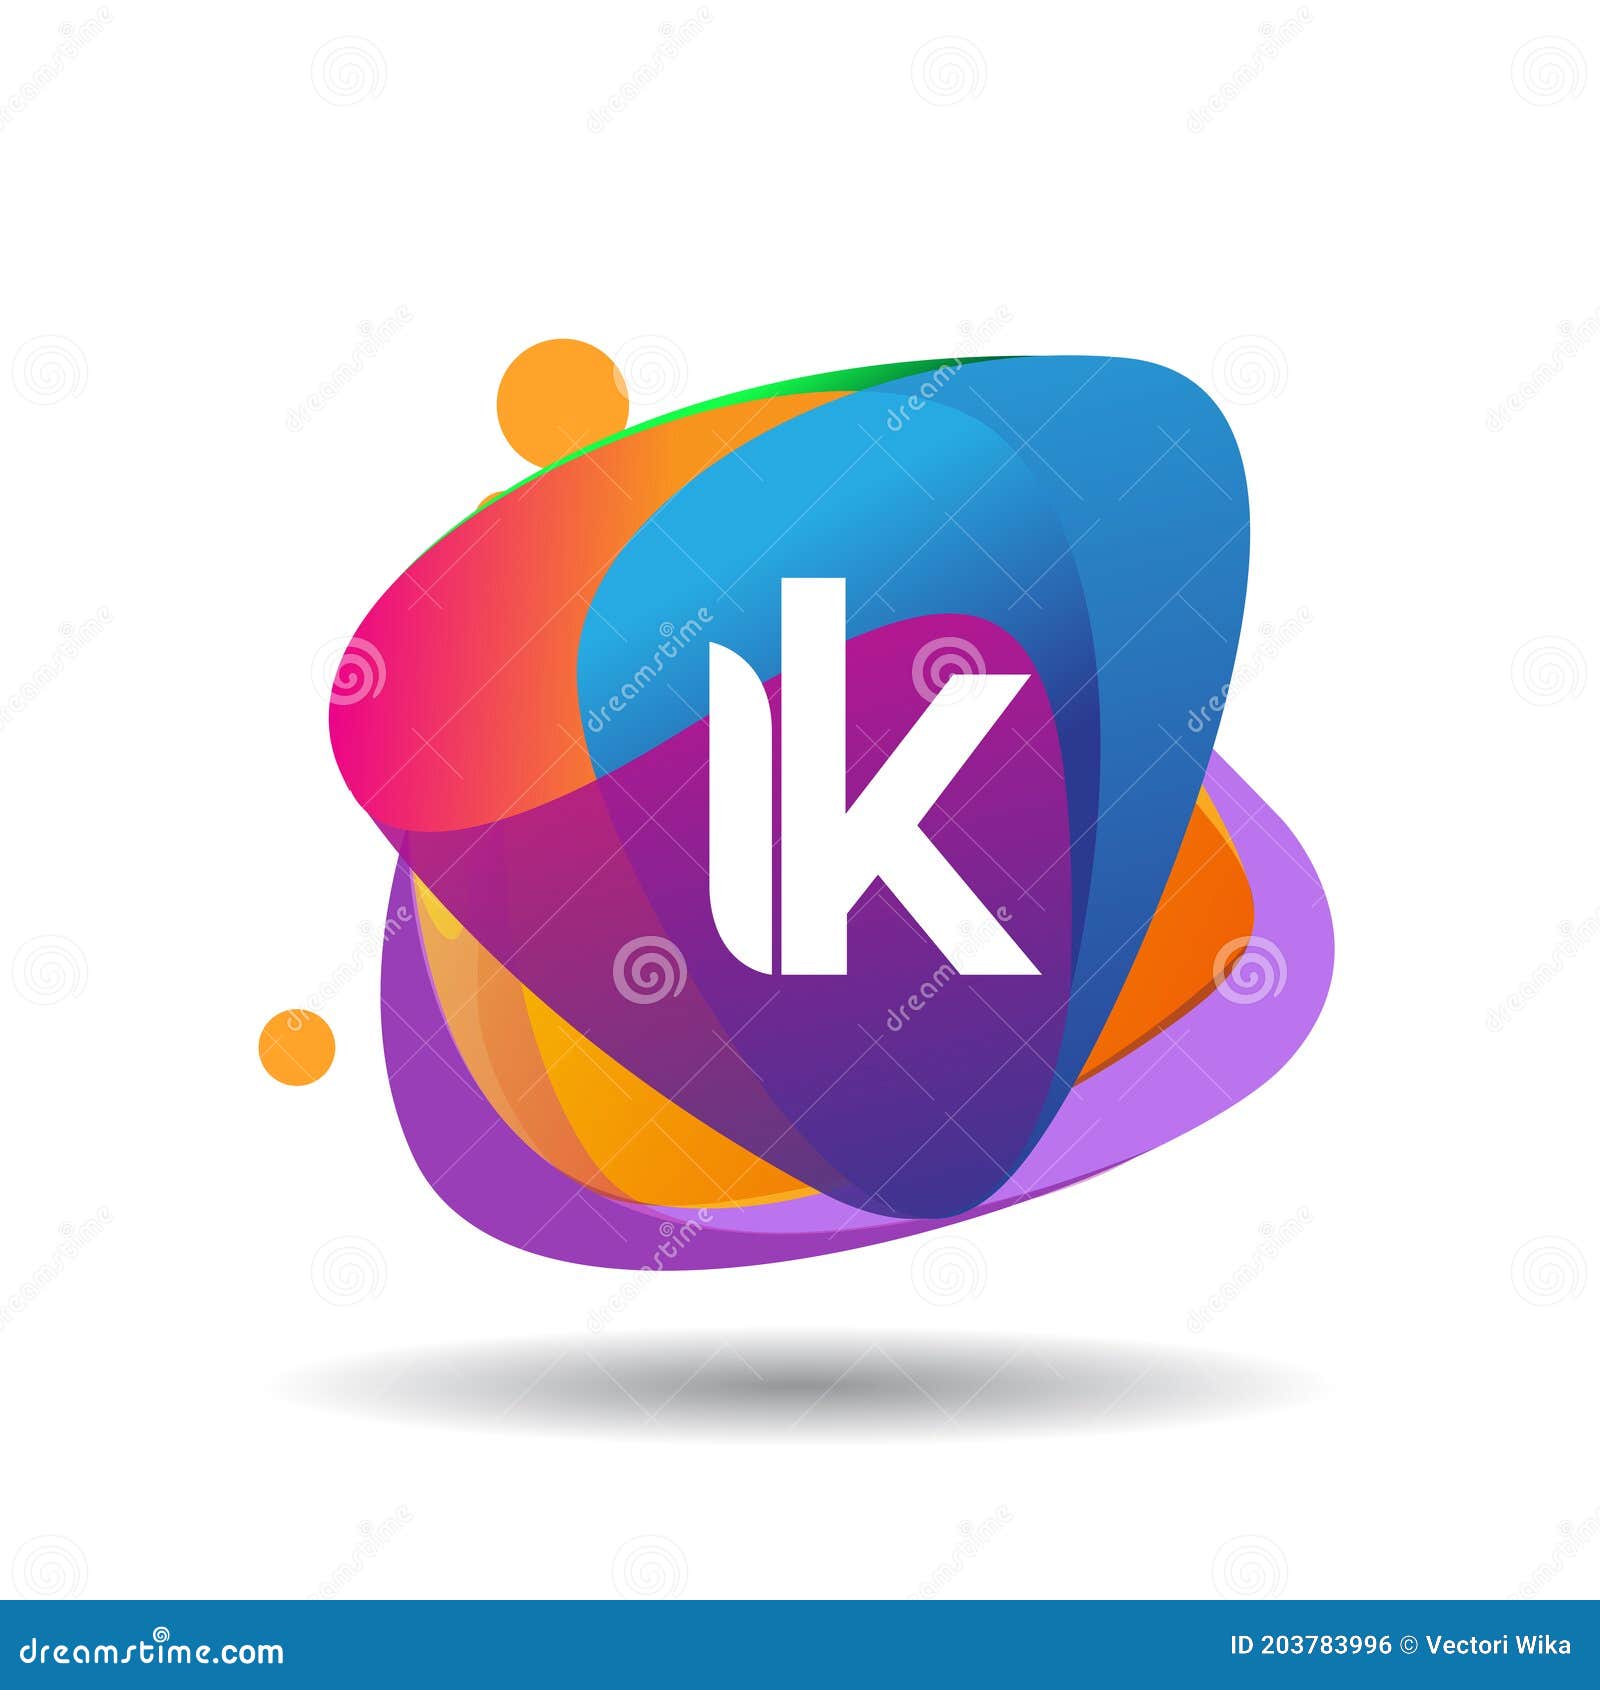 IK / Logo ('18) - zerosixfour design studio 1